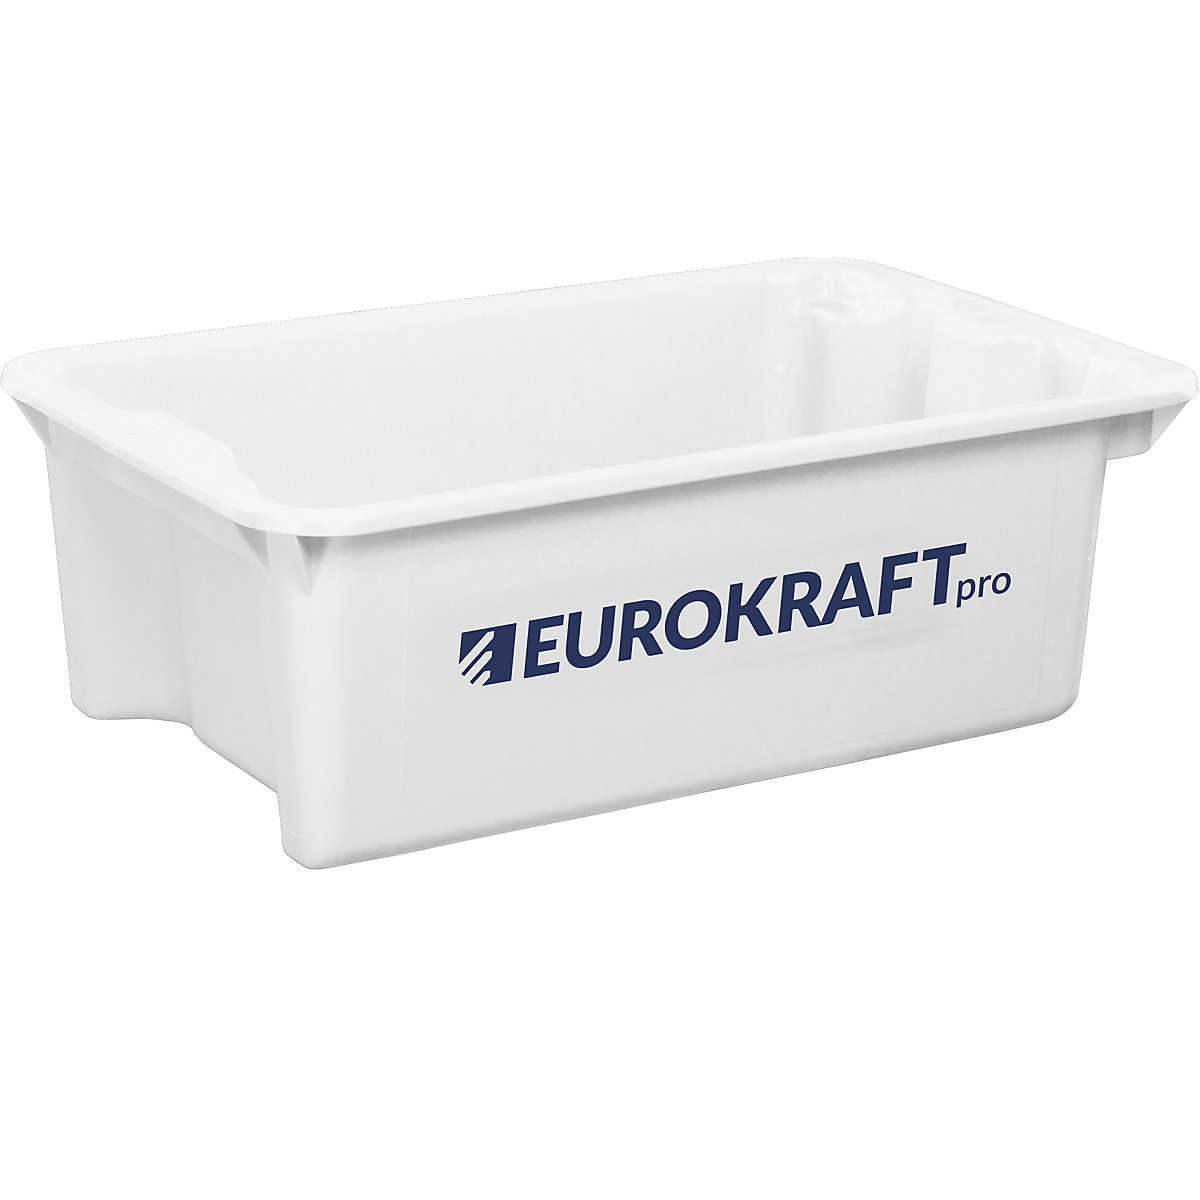 EUROKRAFTpro – Otočná stohovací nádoba z polypropylenu vhodného pro potraviny (Obrázek výrobku 1)